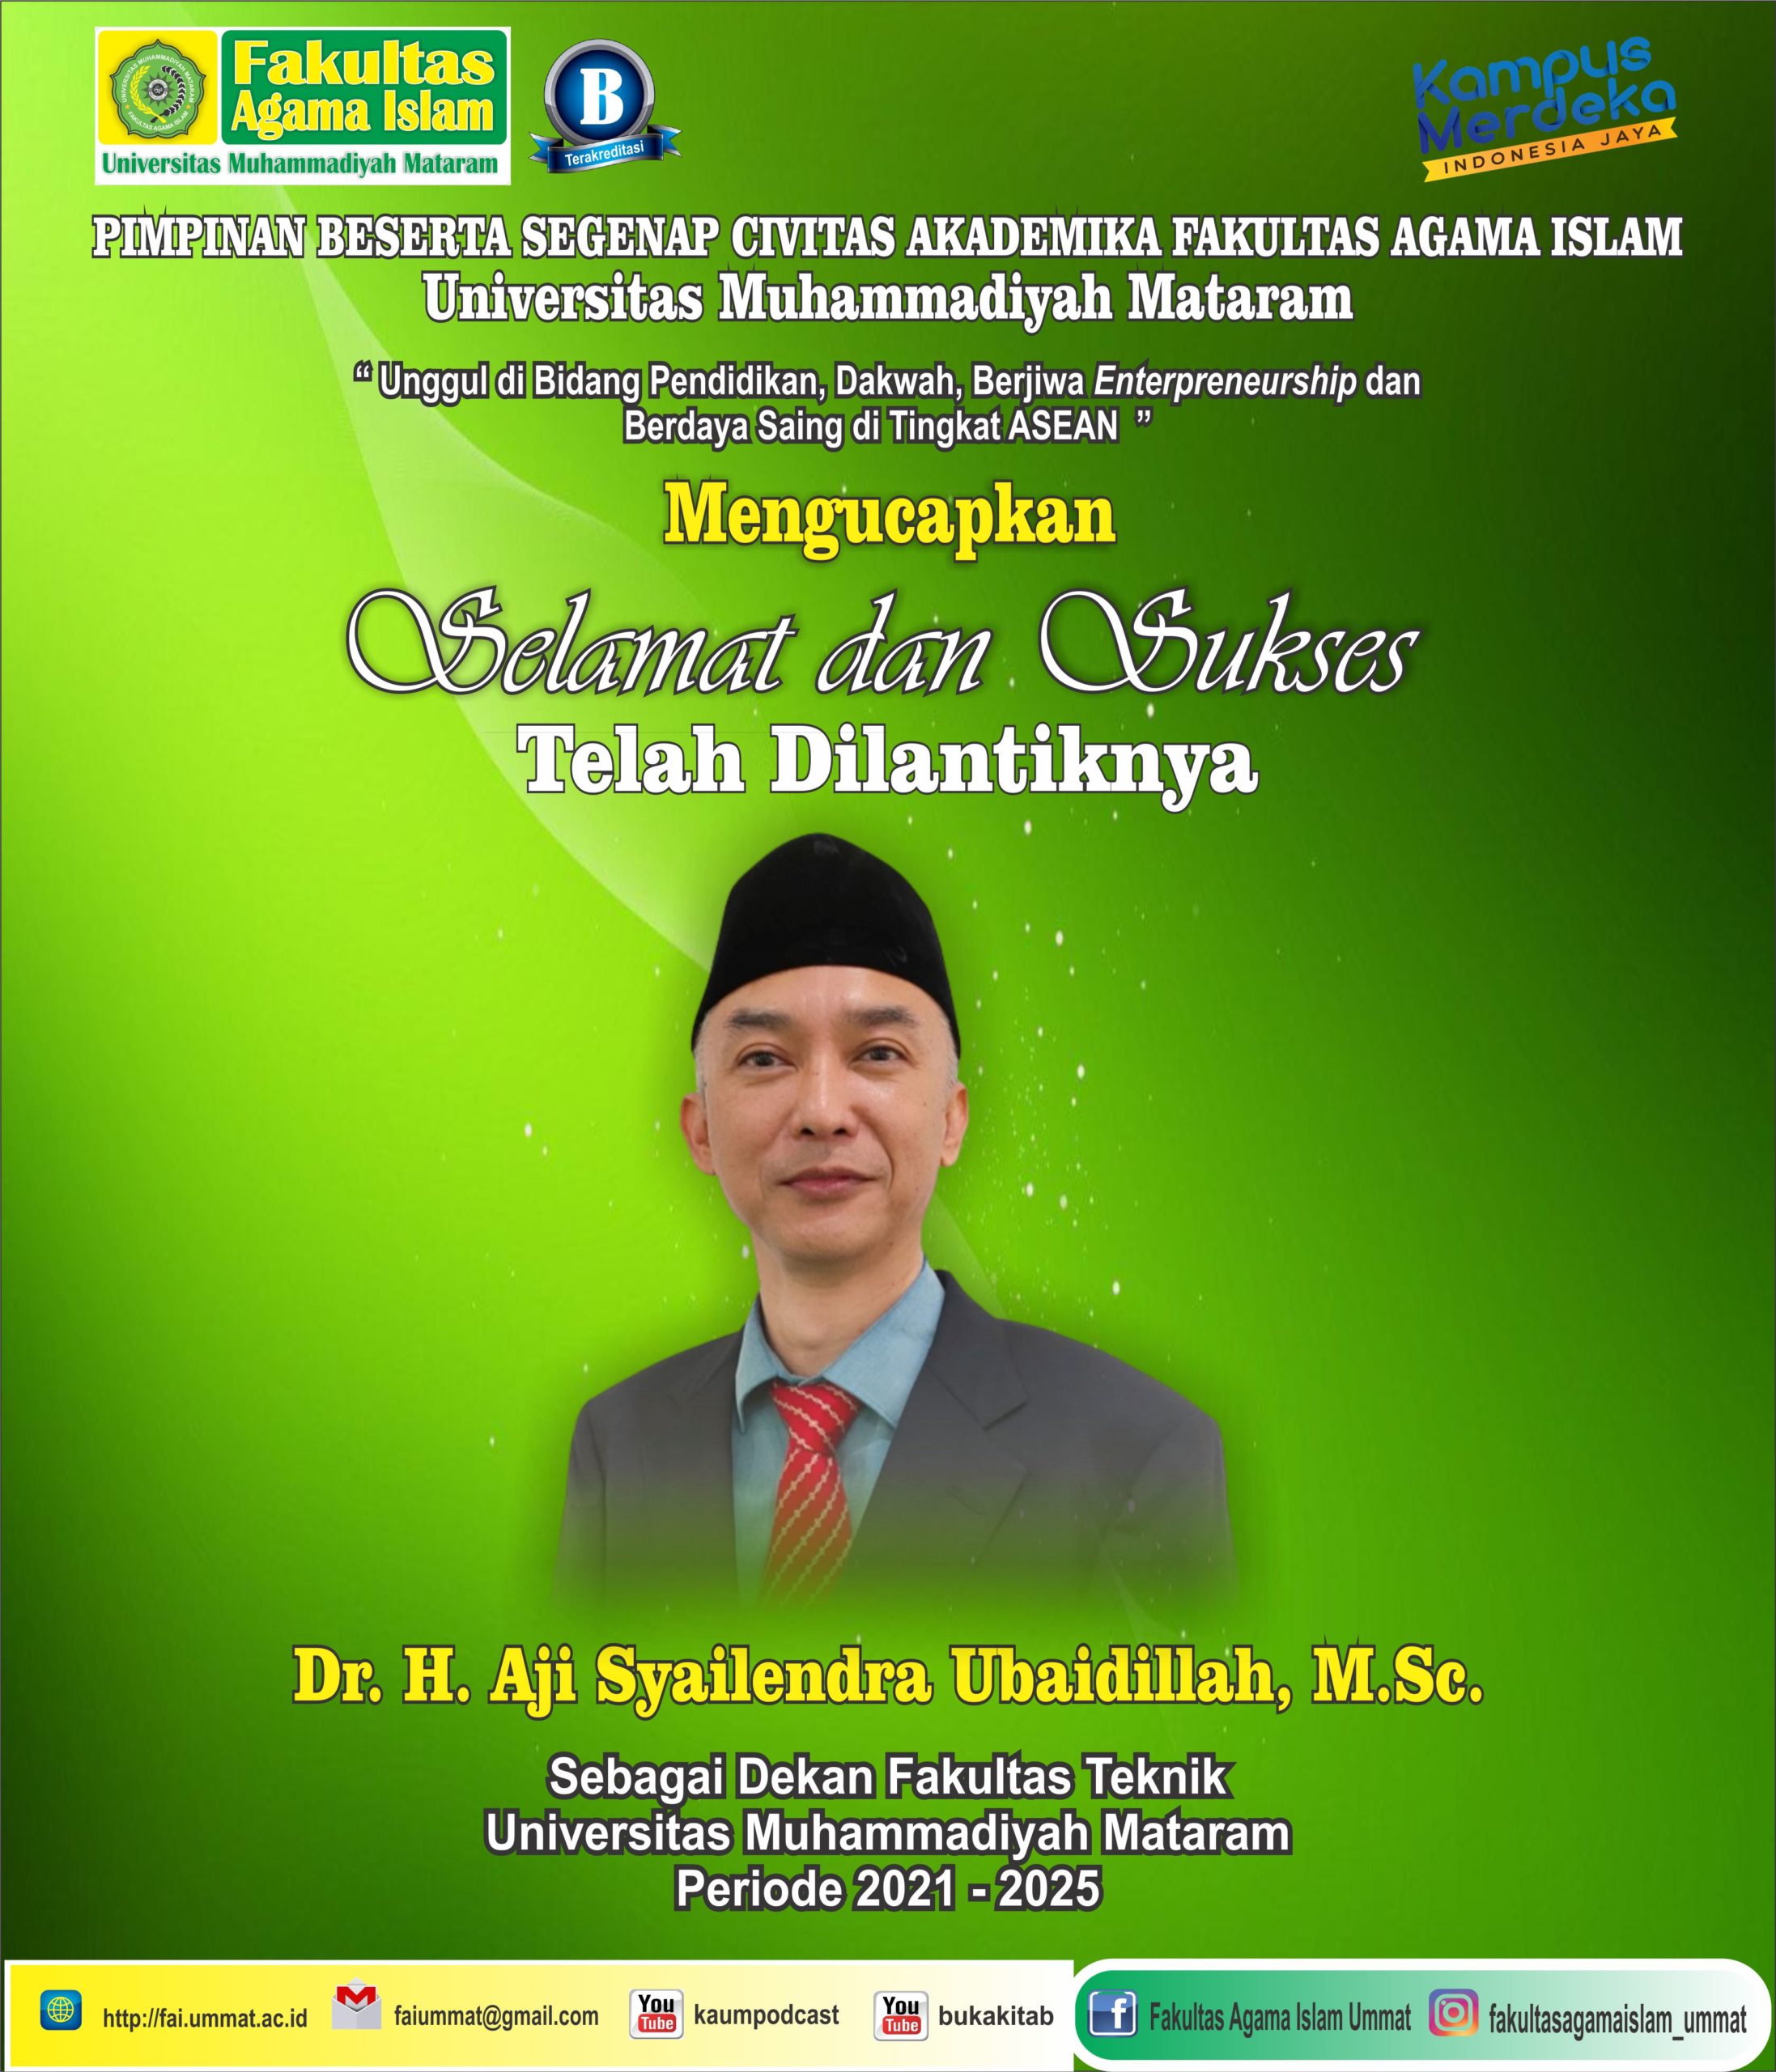 Selamat & Sukses telah dilantiknya Dr. H. Aji Syailendra Ubaidillah, M.Sc. sebagai Dekan Fakultas Teknik UMMAT